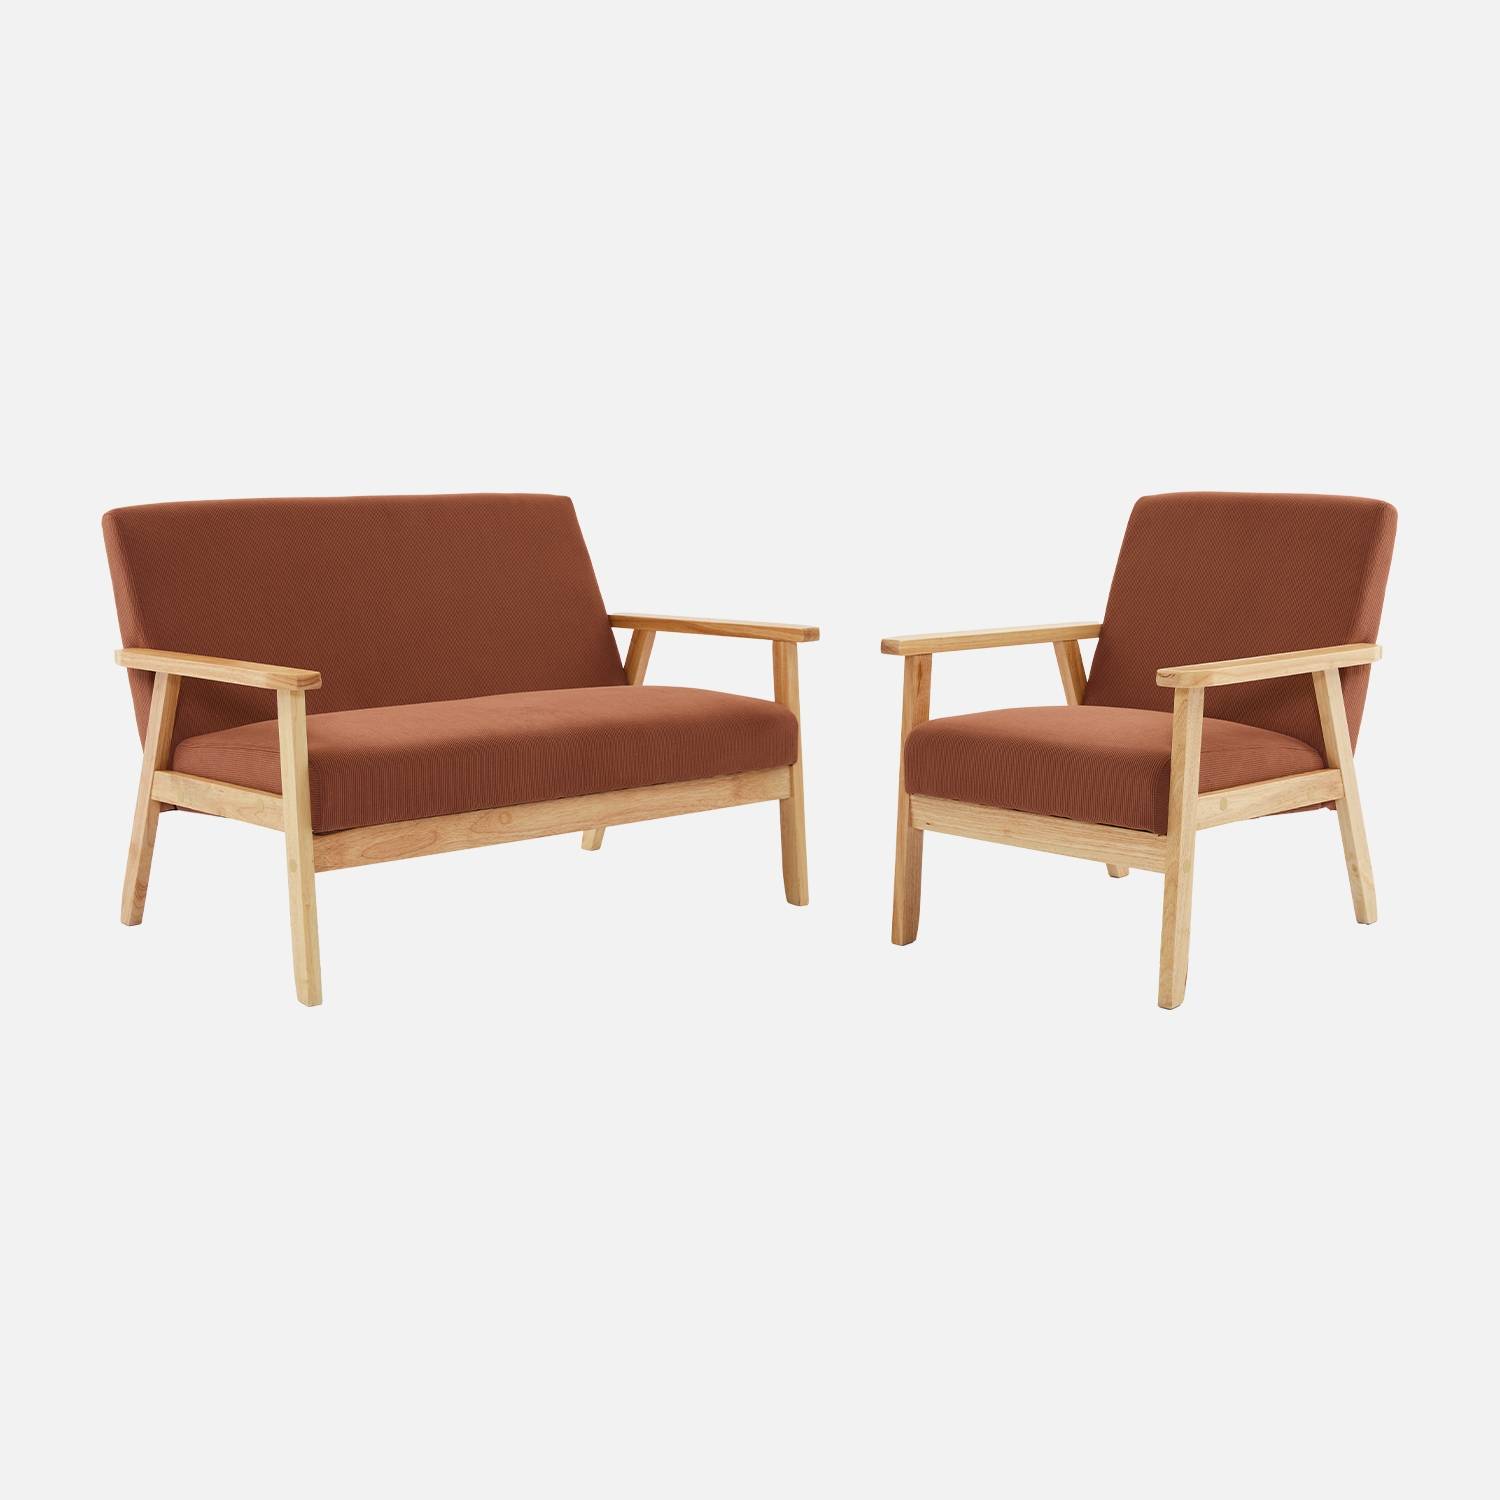 Sofá de 2 plazas y sillón de pana con patas de madera, Marrón